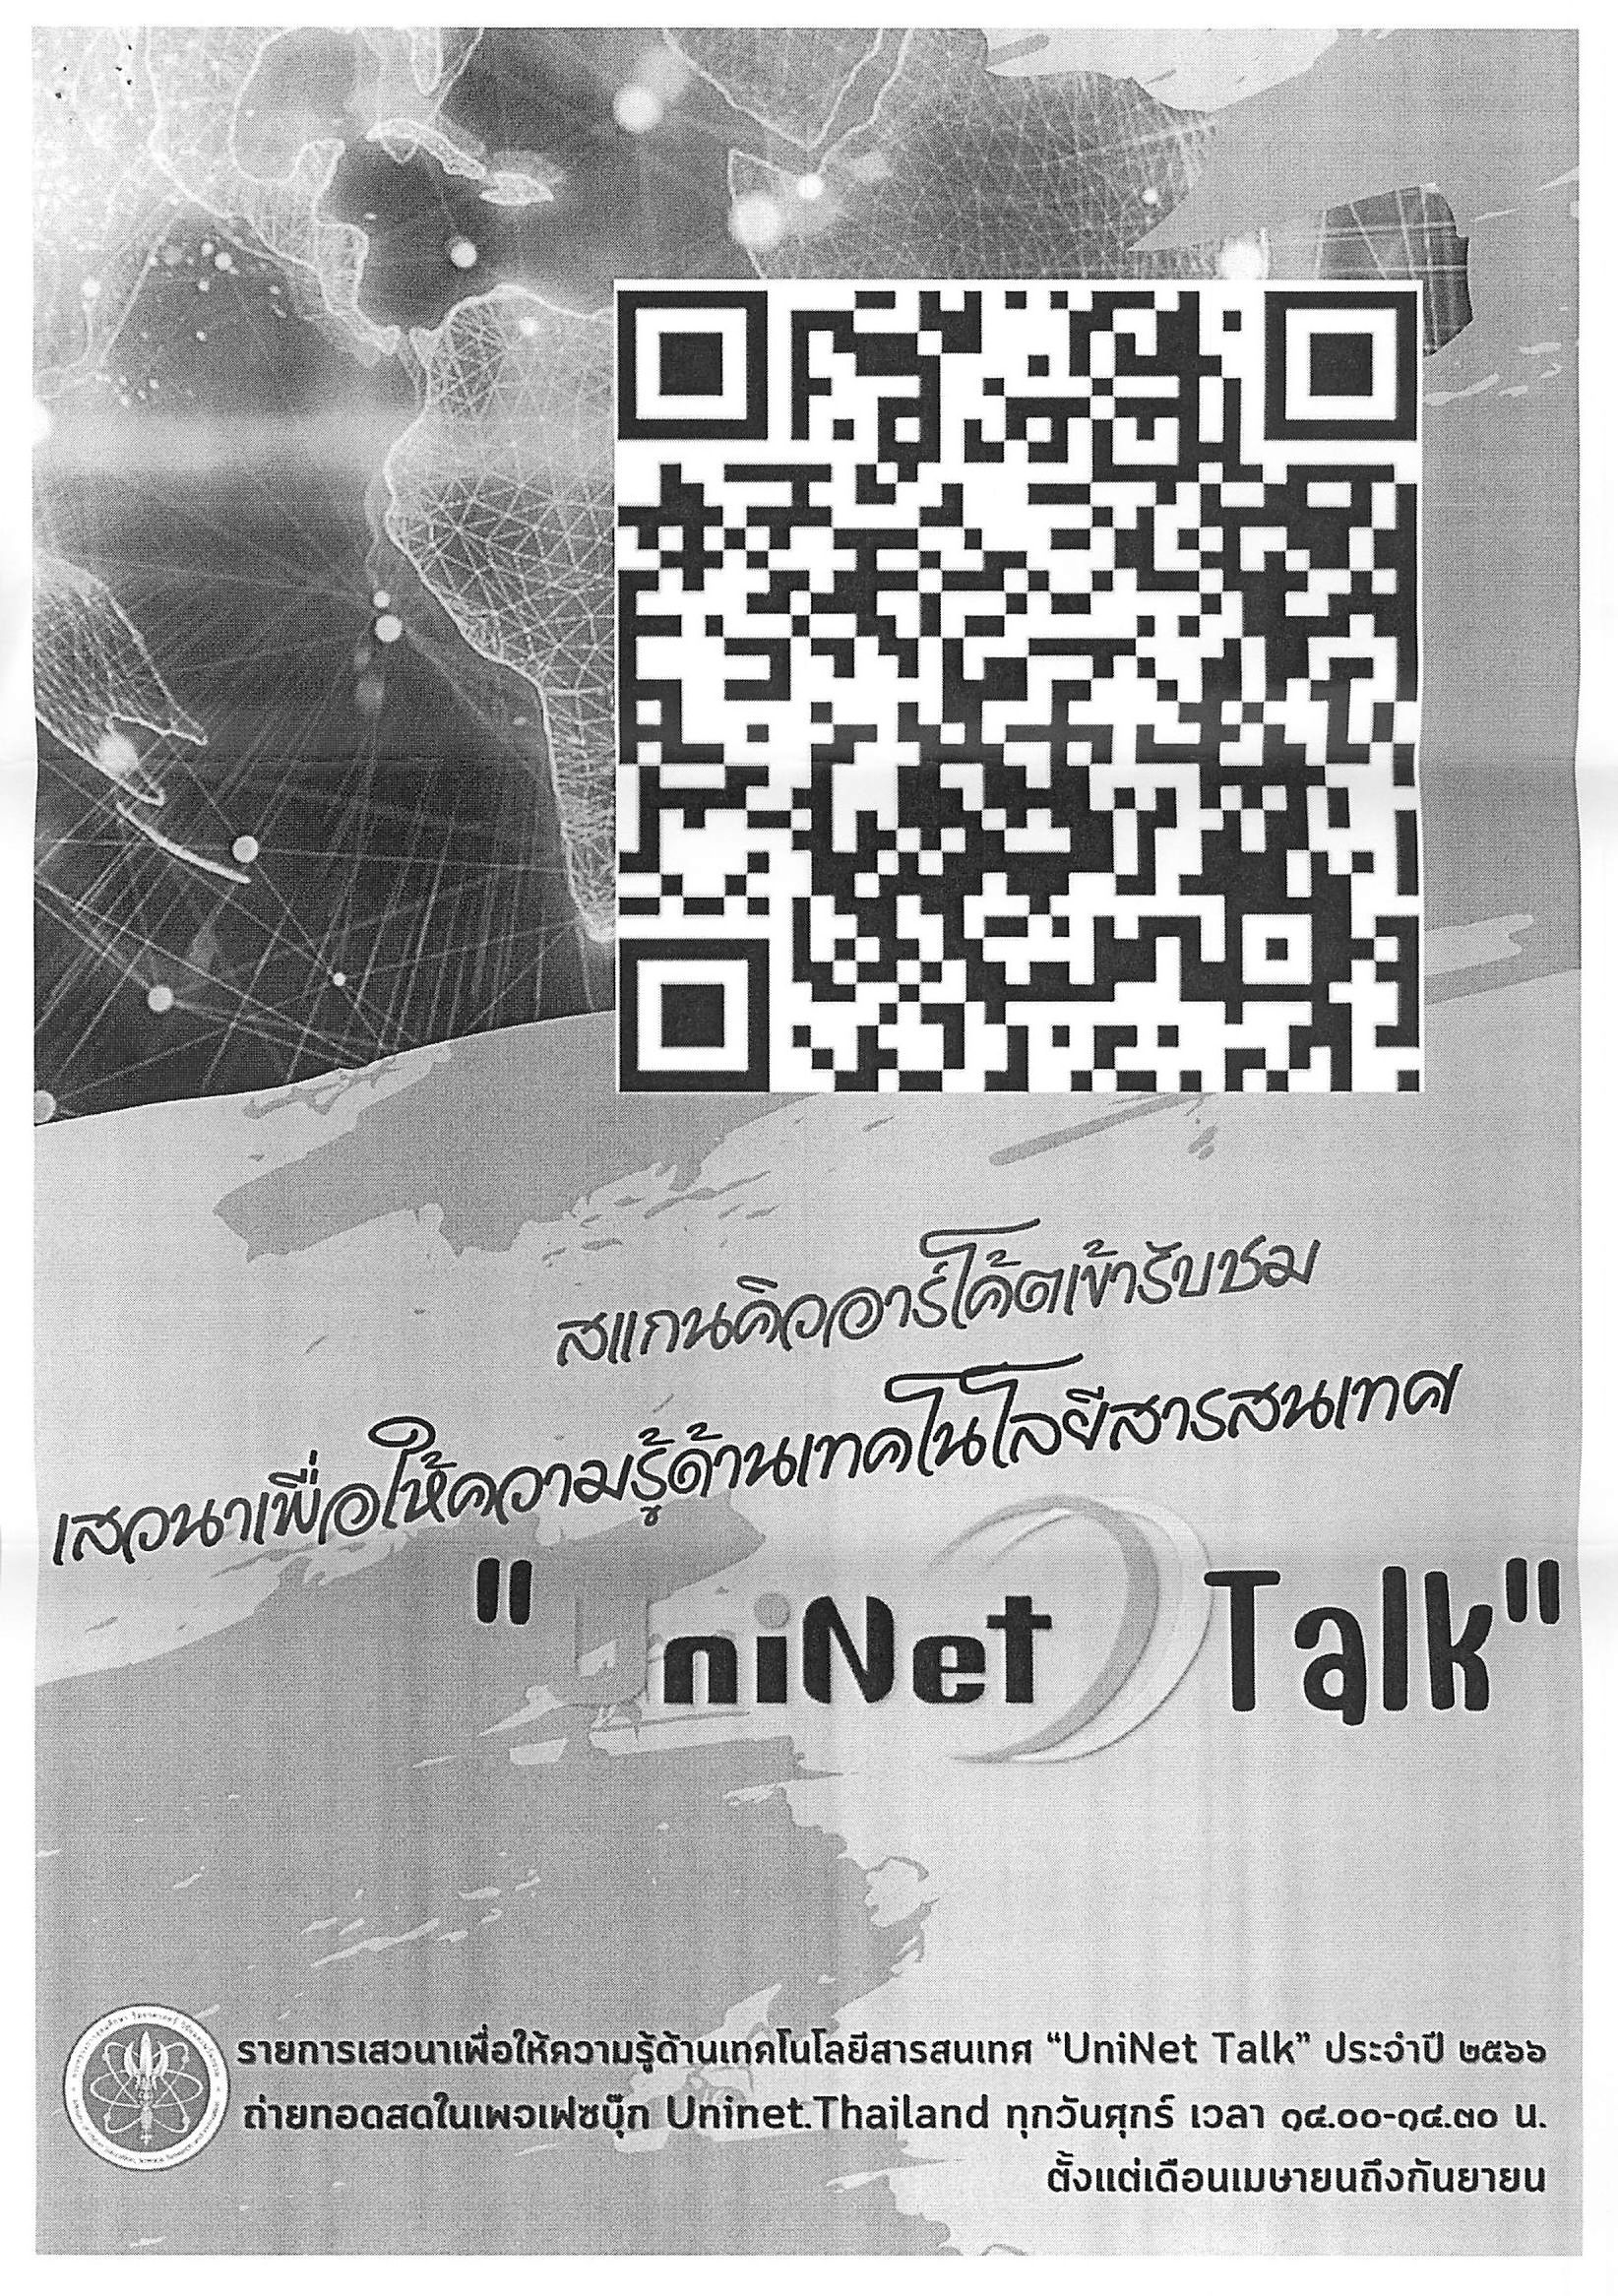 ขอเชิญเข้าร่วมกิจกรรมเสวนาเพื่อให้ความรู้ด้านเทคโนโลยีสารสนเทศ UniNet Talk